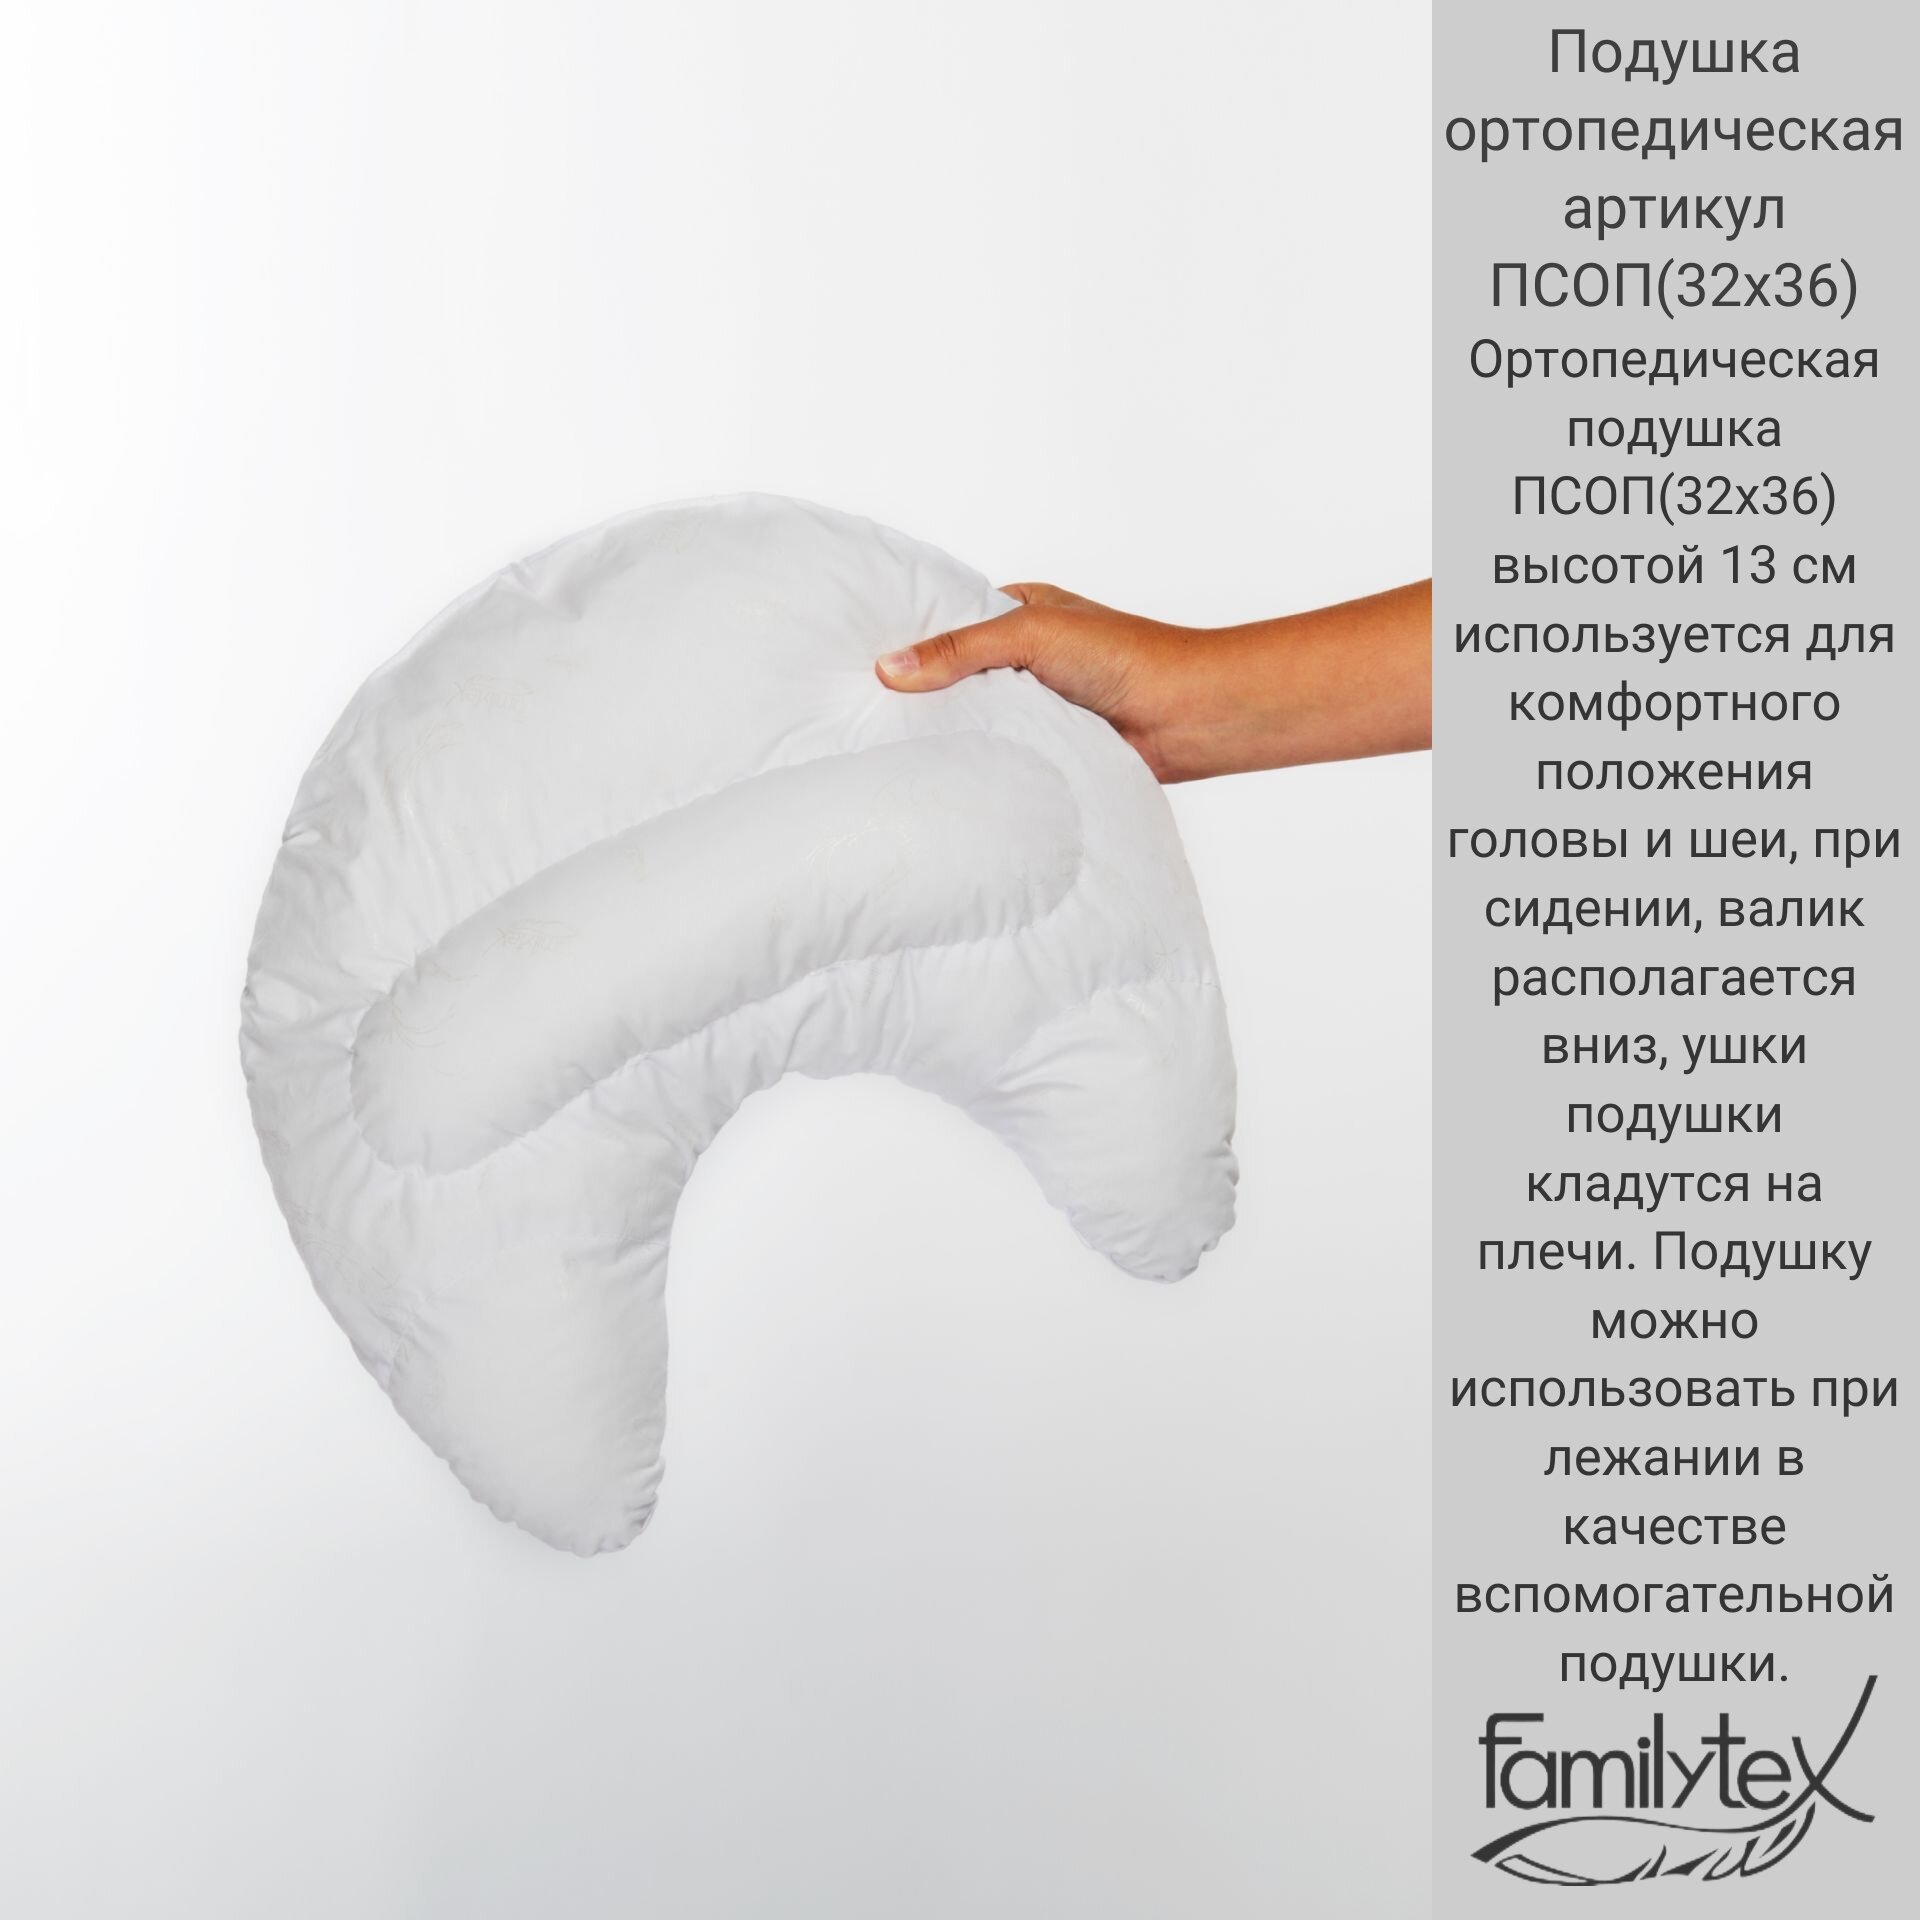 Подушка ортопедическая, гипоаллергенная от Familytex, арт псоп(32х36) высотой 13см, поддерживающая подушка